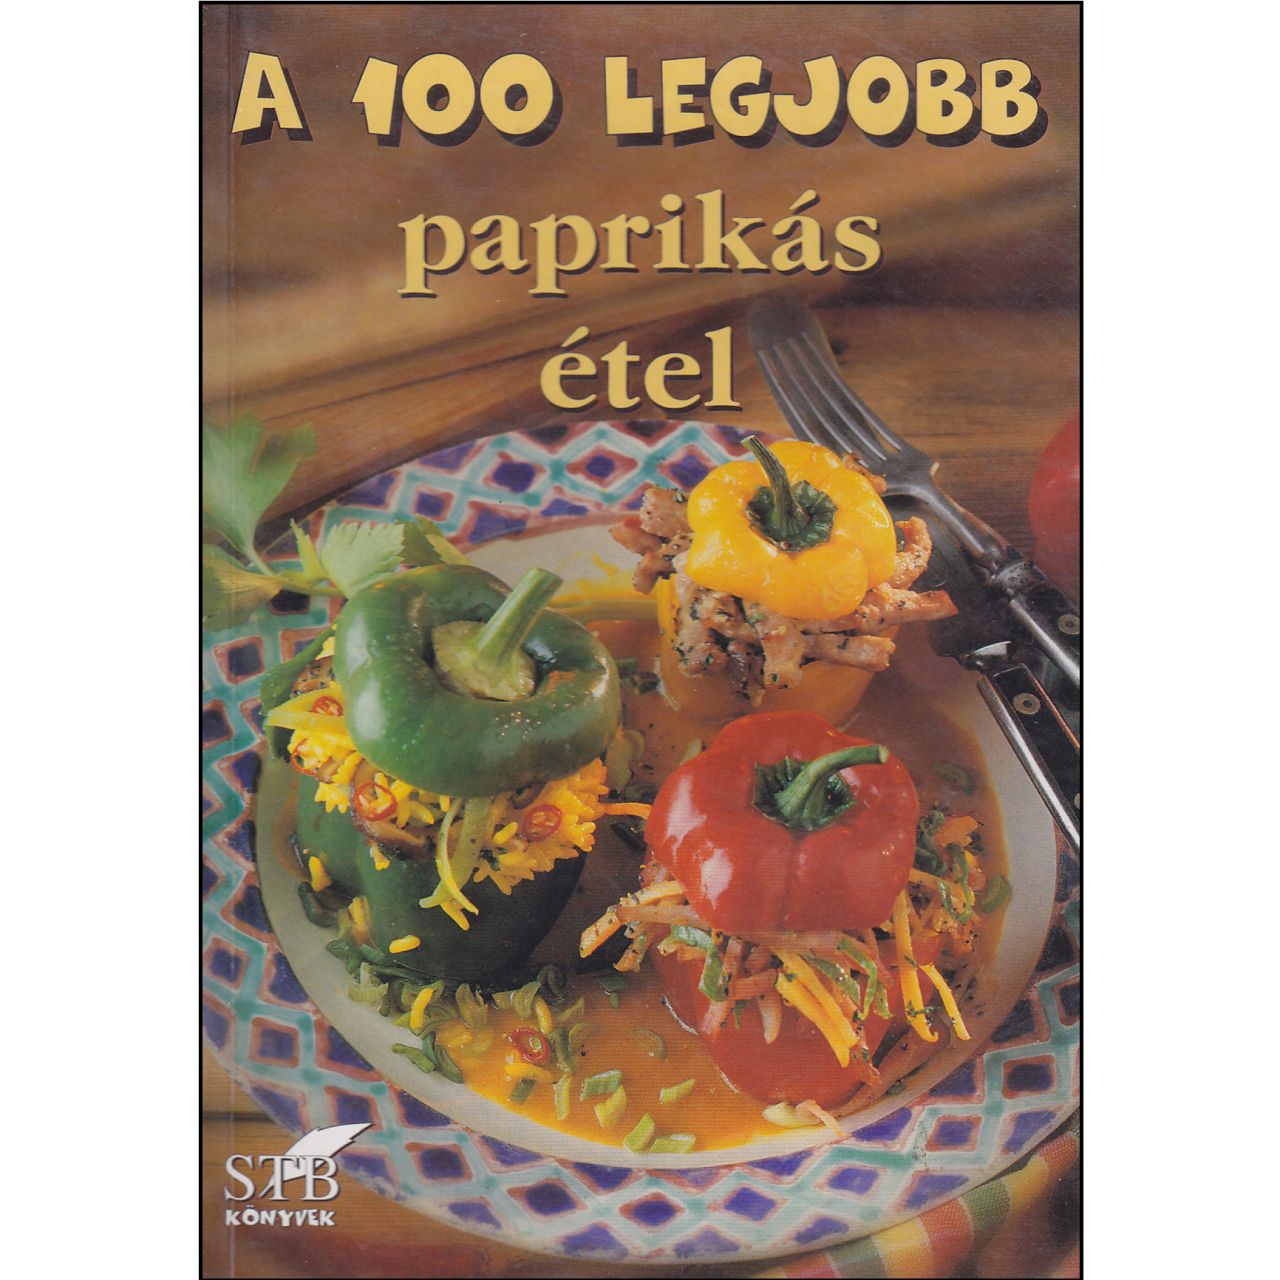 A 100 legjobb paprikás étel (könyv)